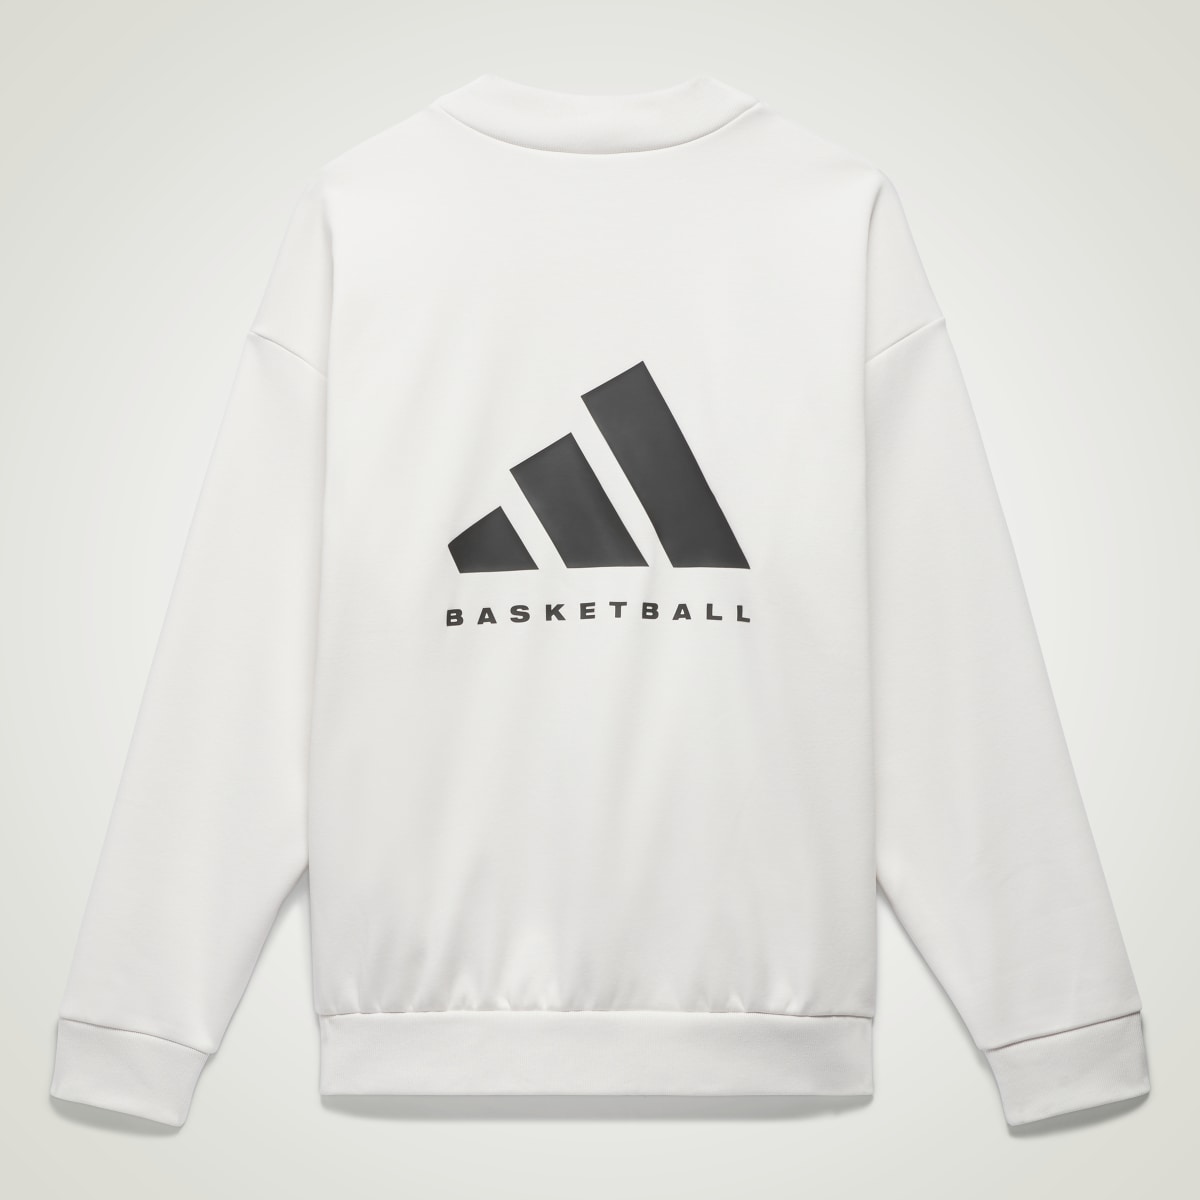 Adidas Basketball Crew Sweatshirt. 5